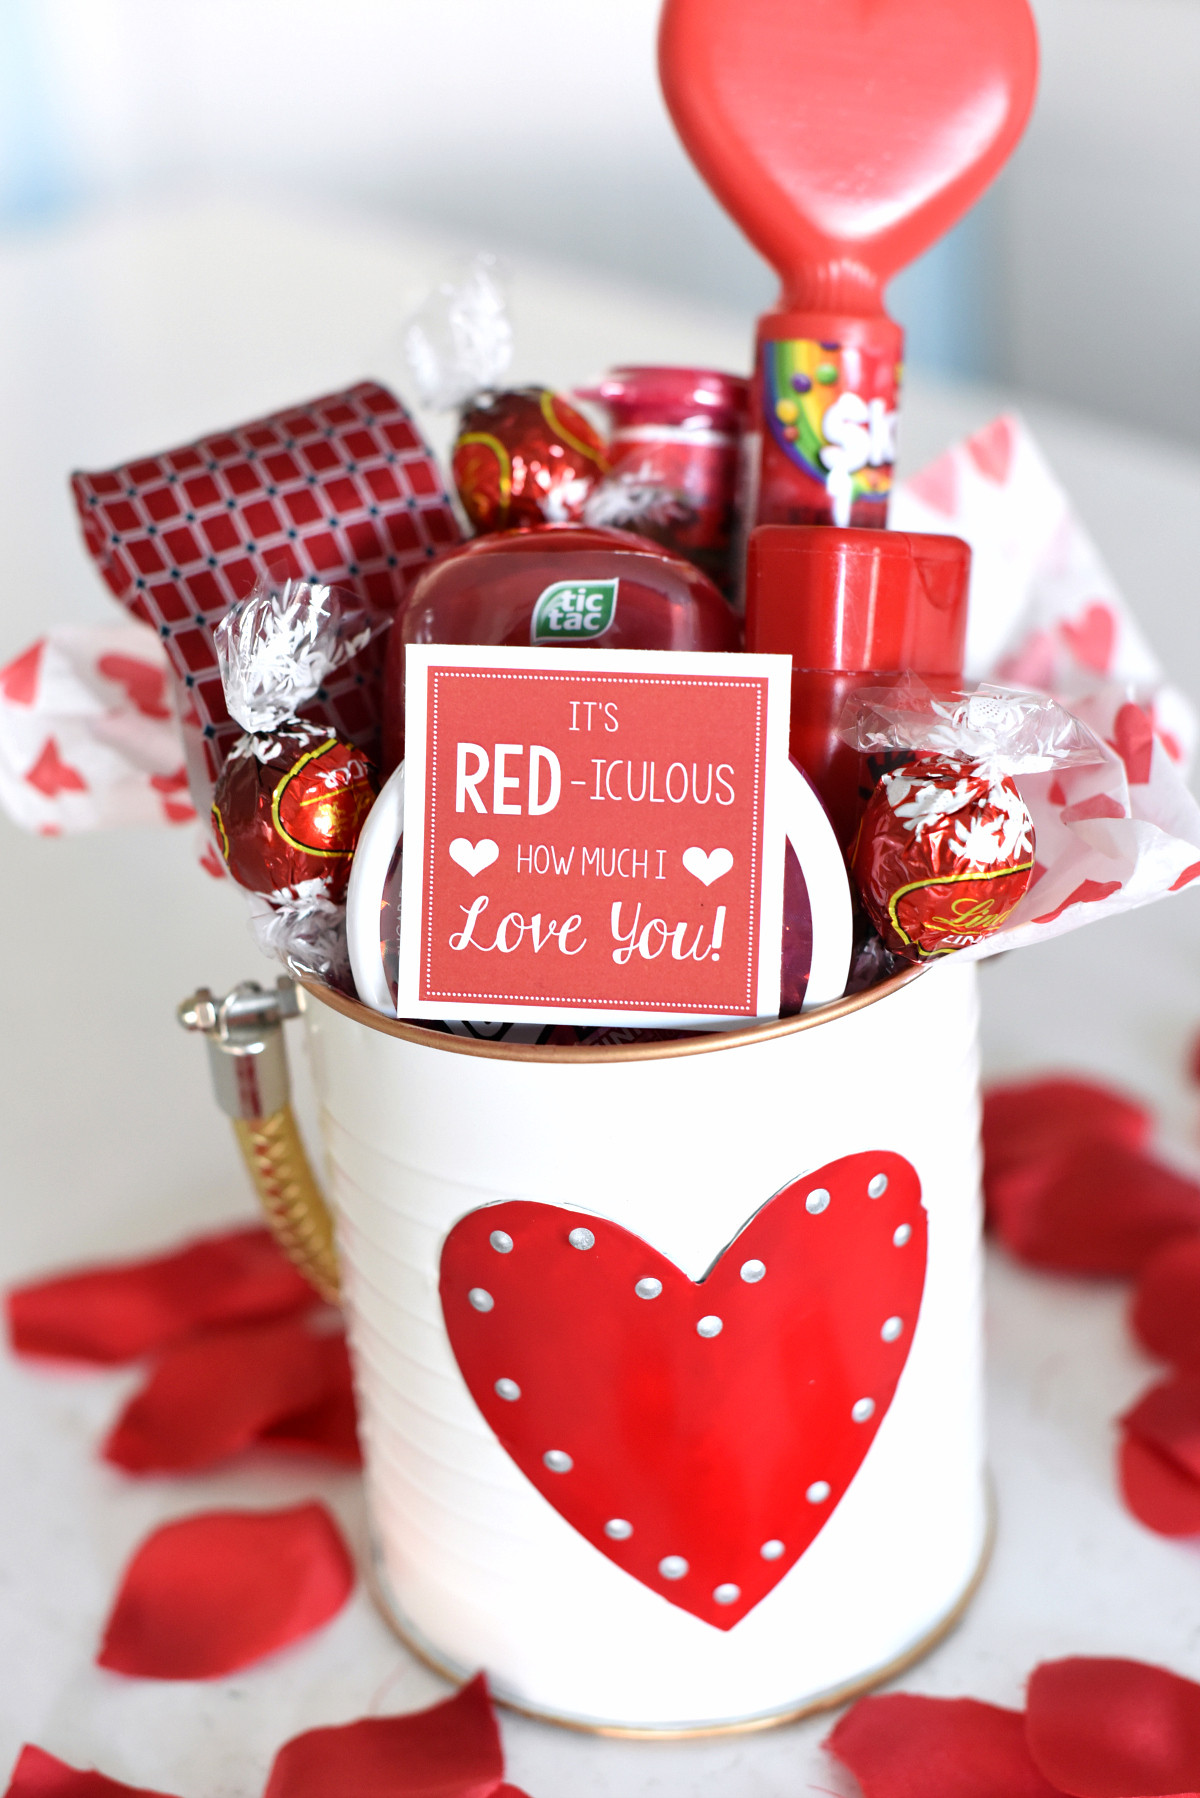 Handmade Valentine Gift Ideas
 25 DIY Valentine s Day Gift Ideas Teens Will Love